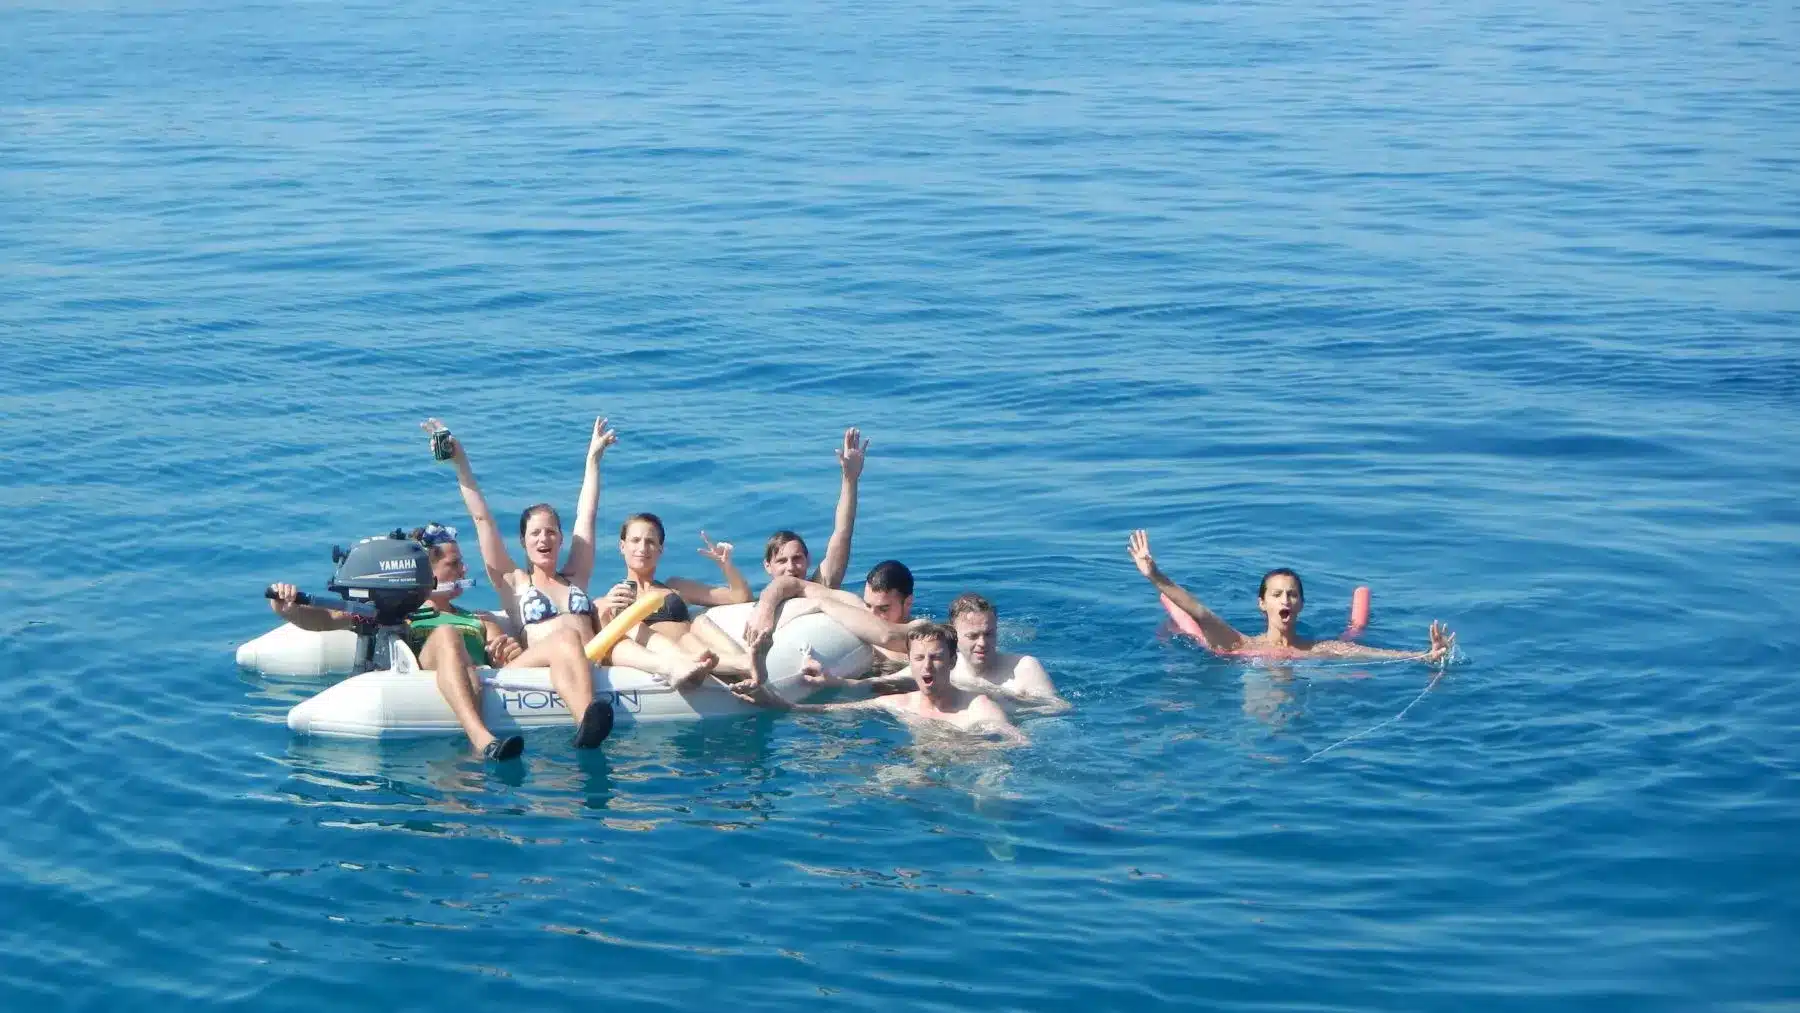 Eine Gruppe von sieben Personen genießt einen sonnigen Tag auf einem Schlauchboot im klaren, blauen Wasser. Einige winken energisch in die Kamera, während sie sich auf ein Segelabenteuer vorbereiten.